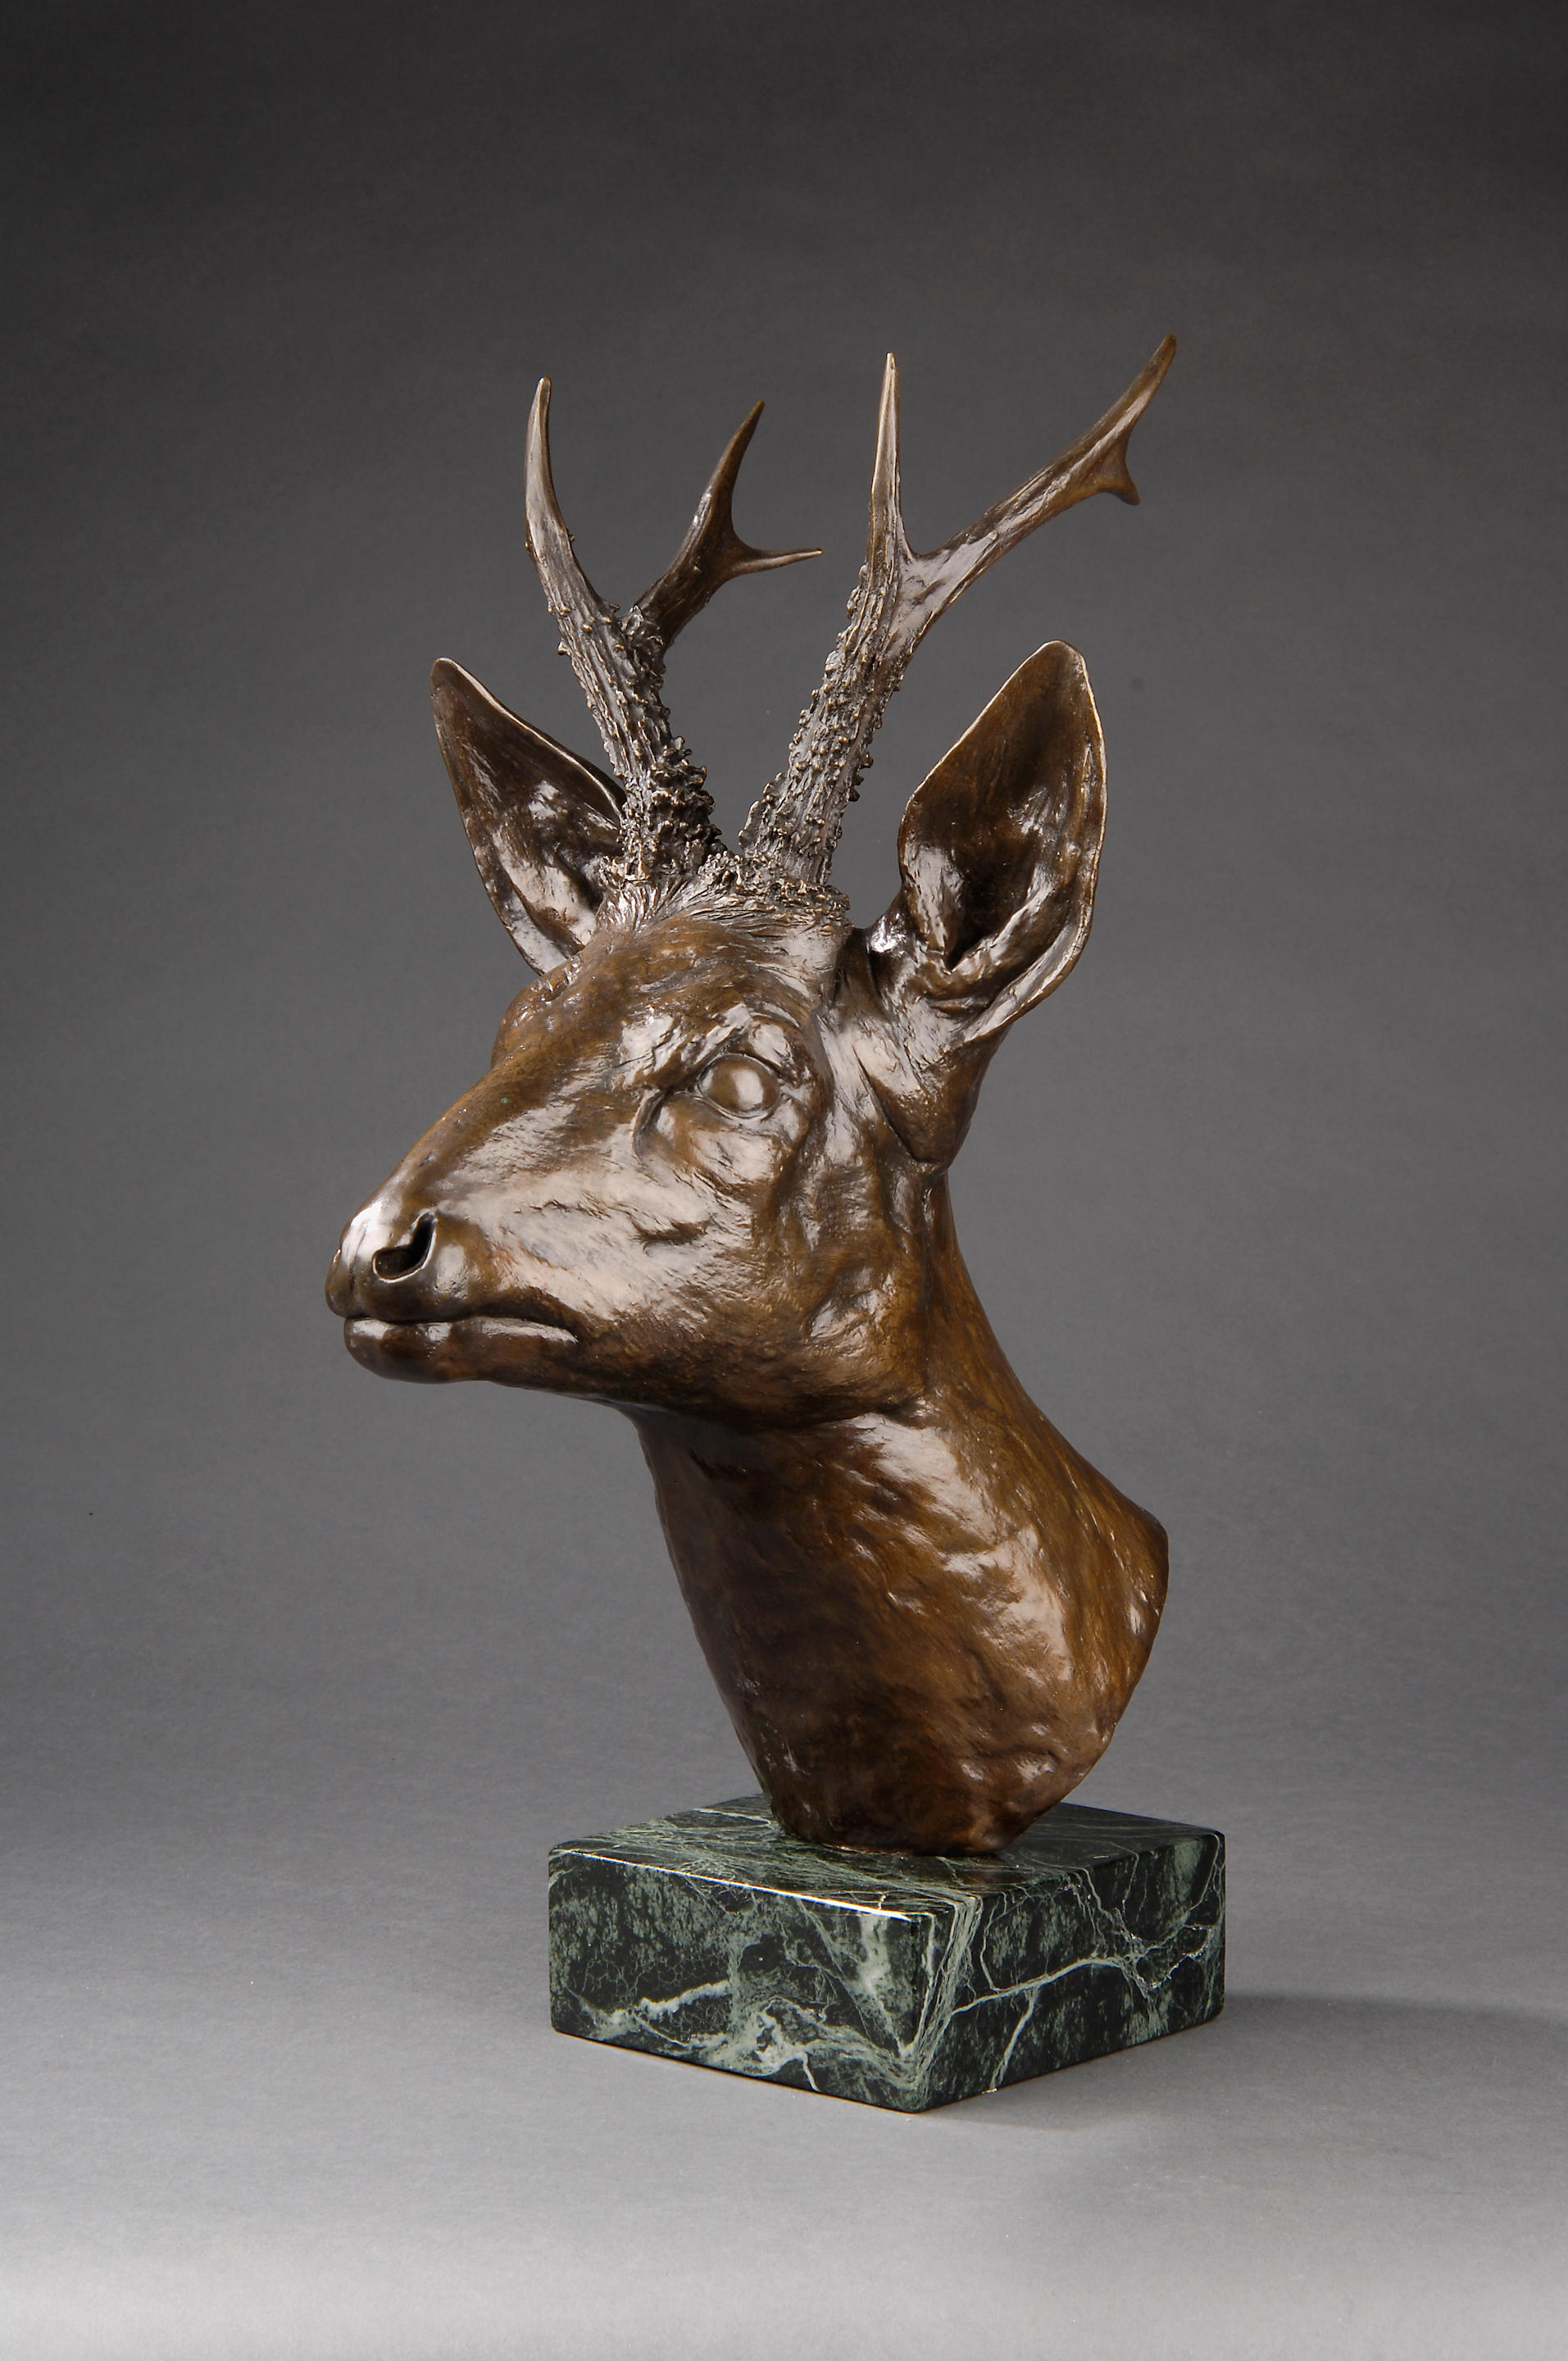 Geoffrey Dashwood (British, born 1947): A bronze model of a stag's head